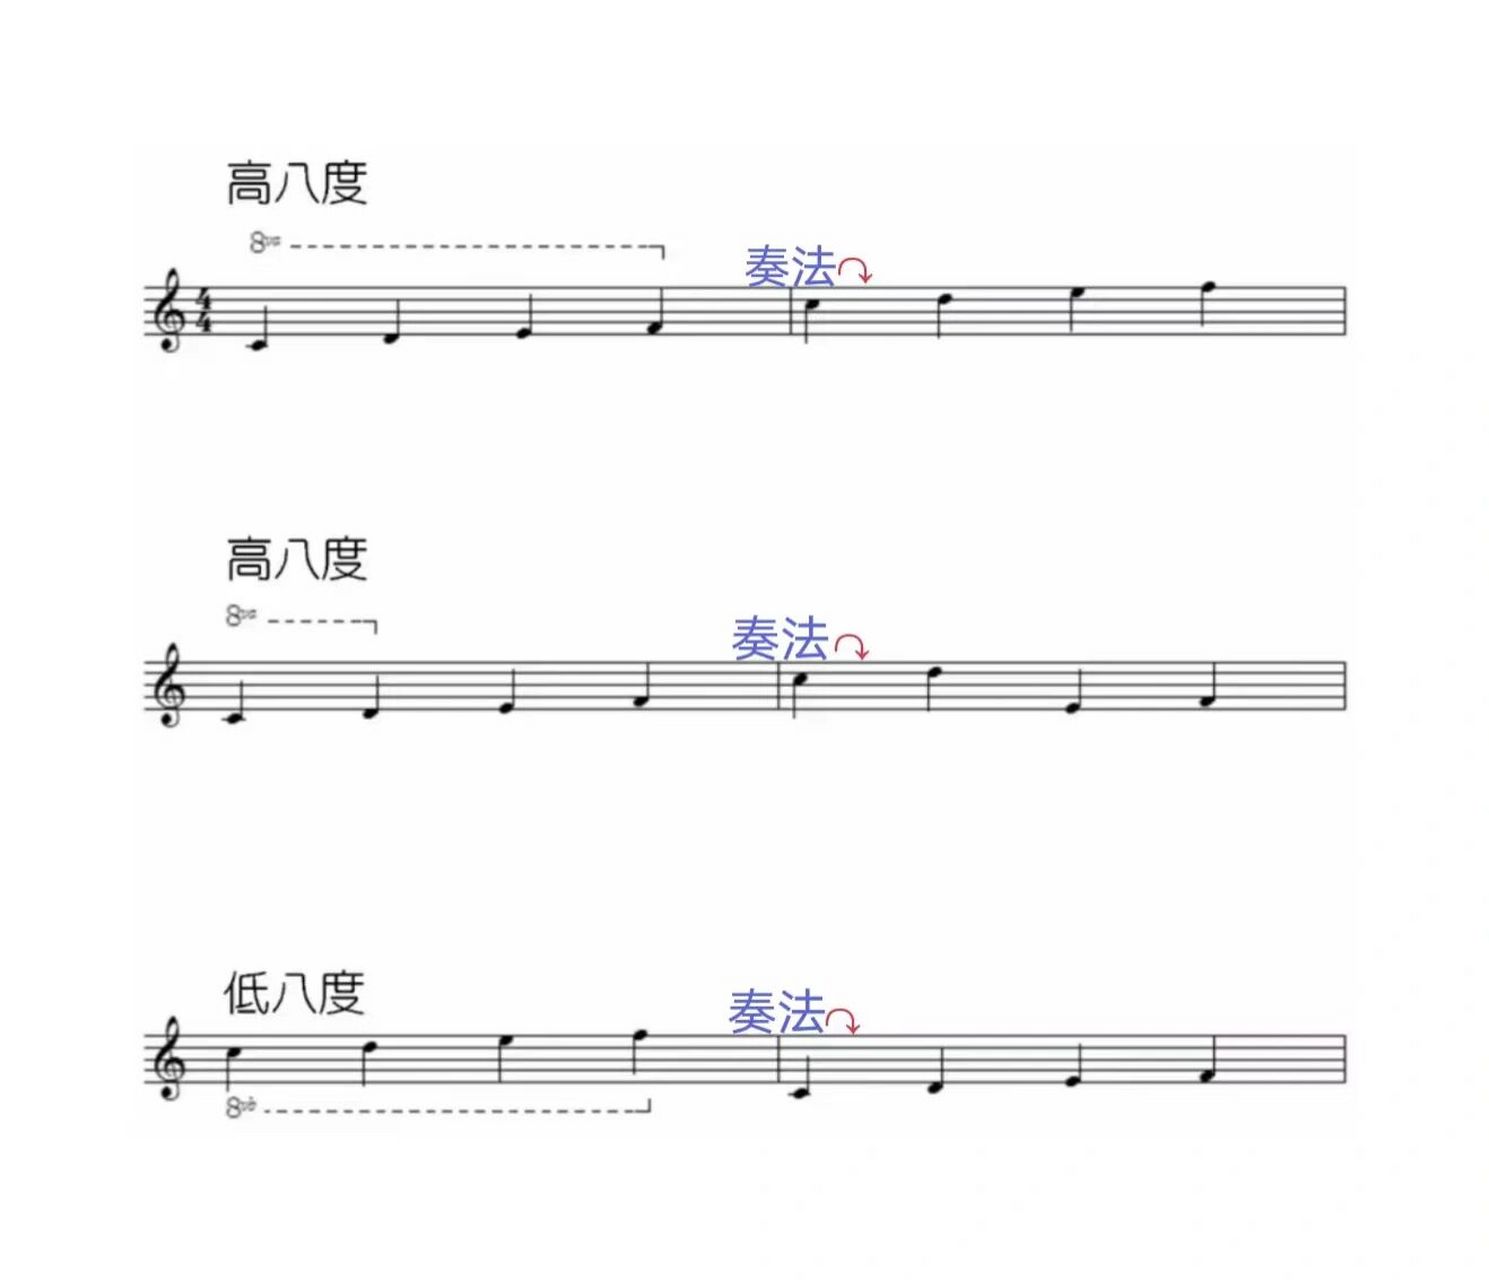 96基本乐理(十一):移动八度记号 为了写谱的方便,在记谱中常会用到